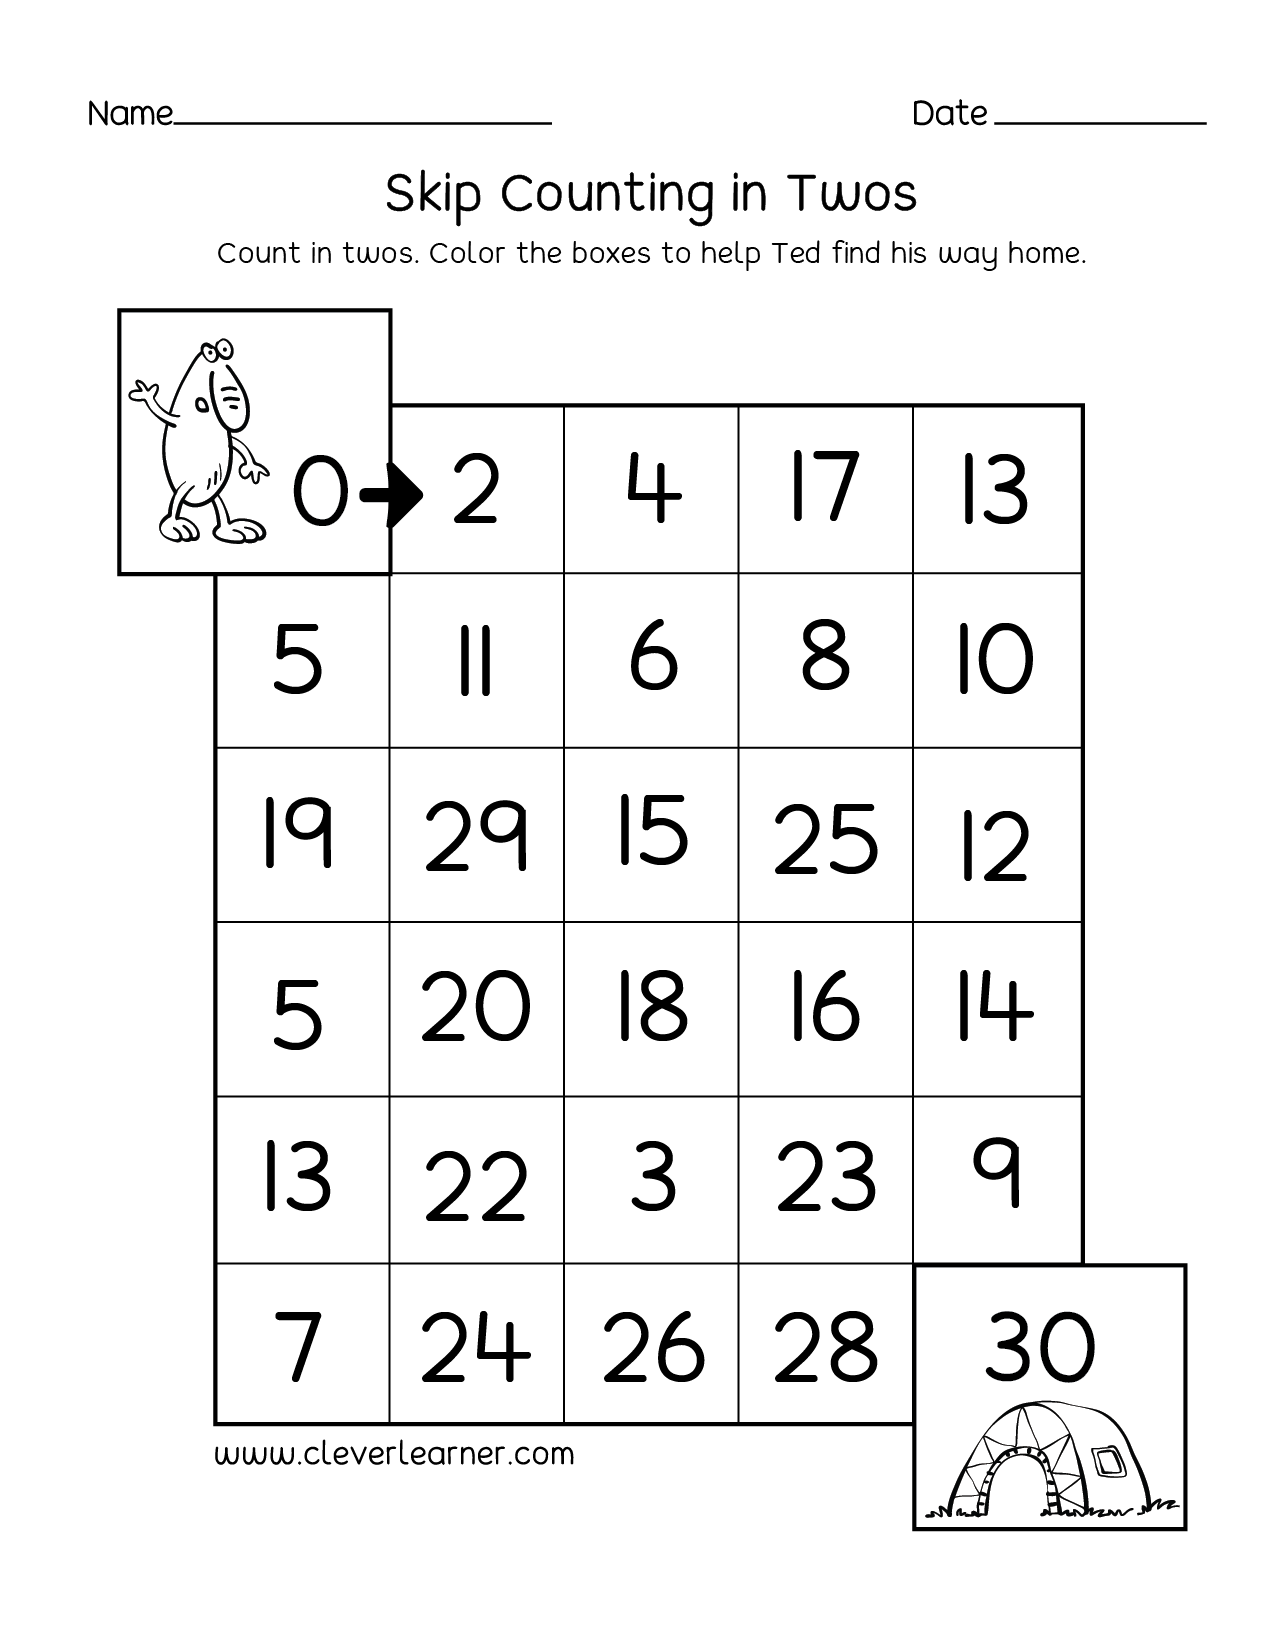 skip-counting-activity-sheets